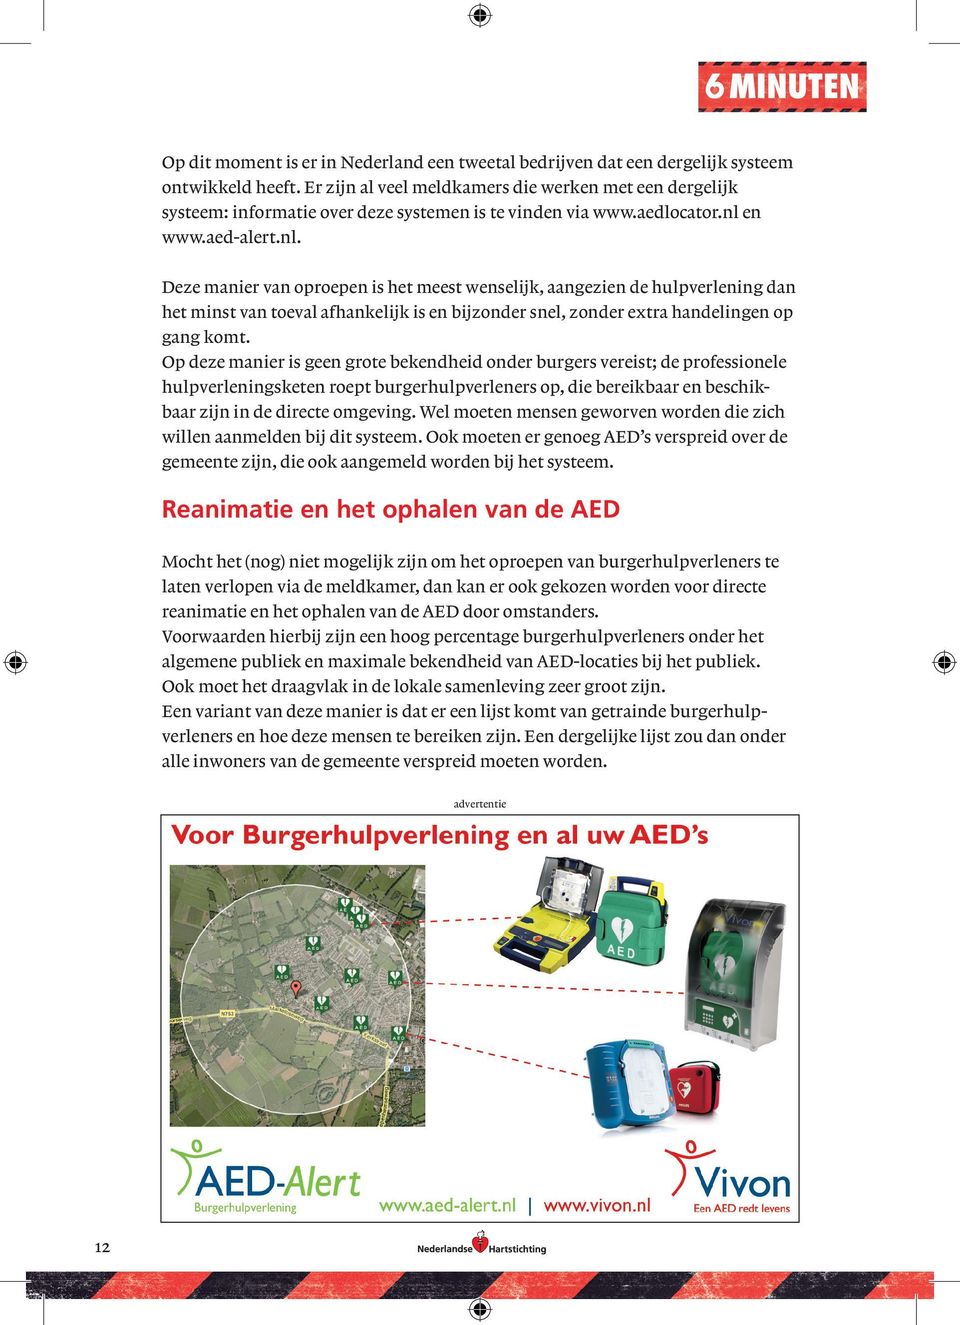 en www.aed-alert.nl. Deze manier van oproepen is het meest wenselijk, aangezien de hulpverlening dan het minst van toeval afhankelijk is en bijzonder snel, zonder extra handelingen op gang komt.